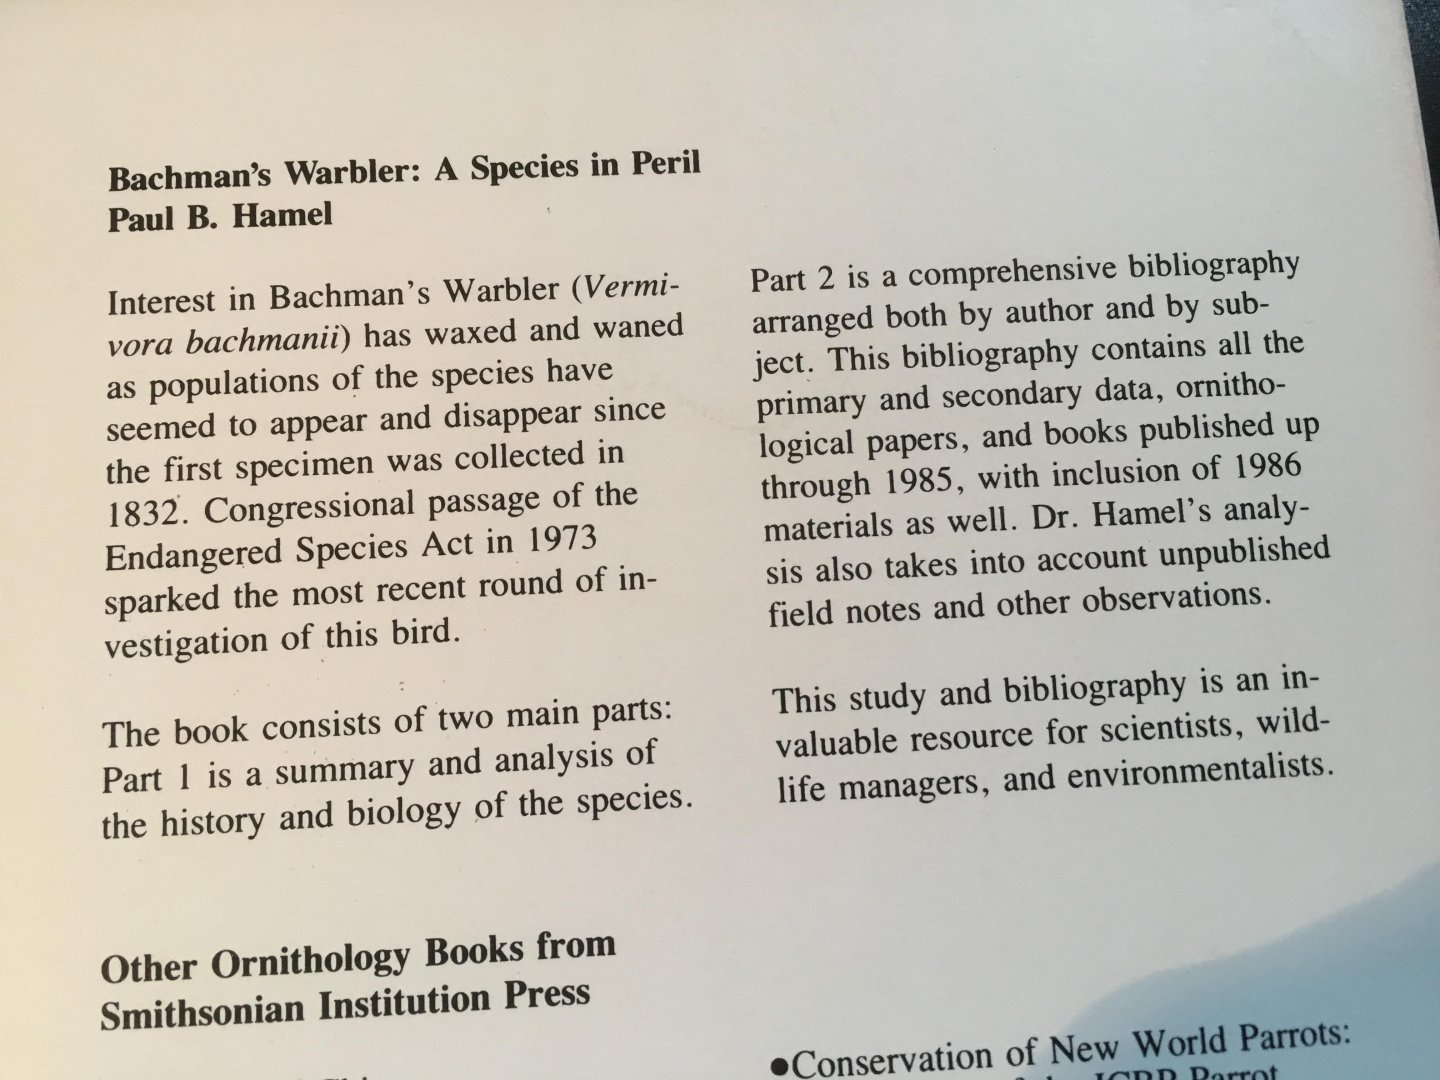 Hamel, Paul B - Bachman's Warbler - a species in peril